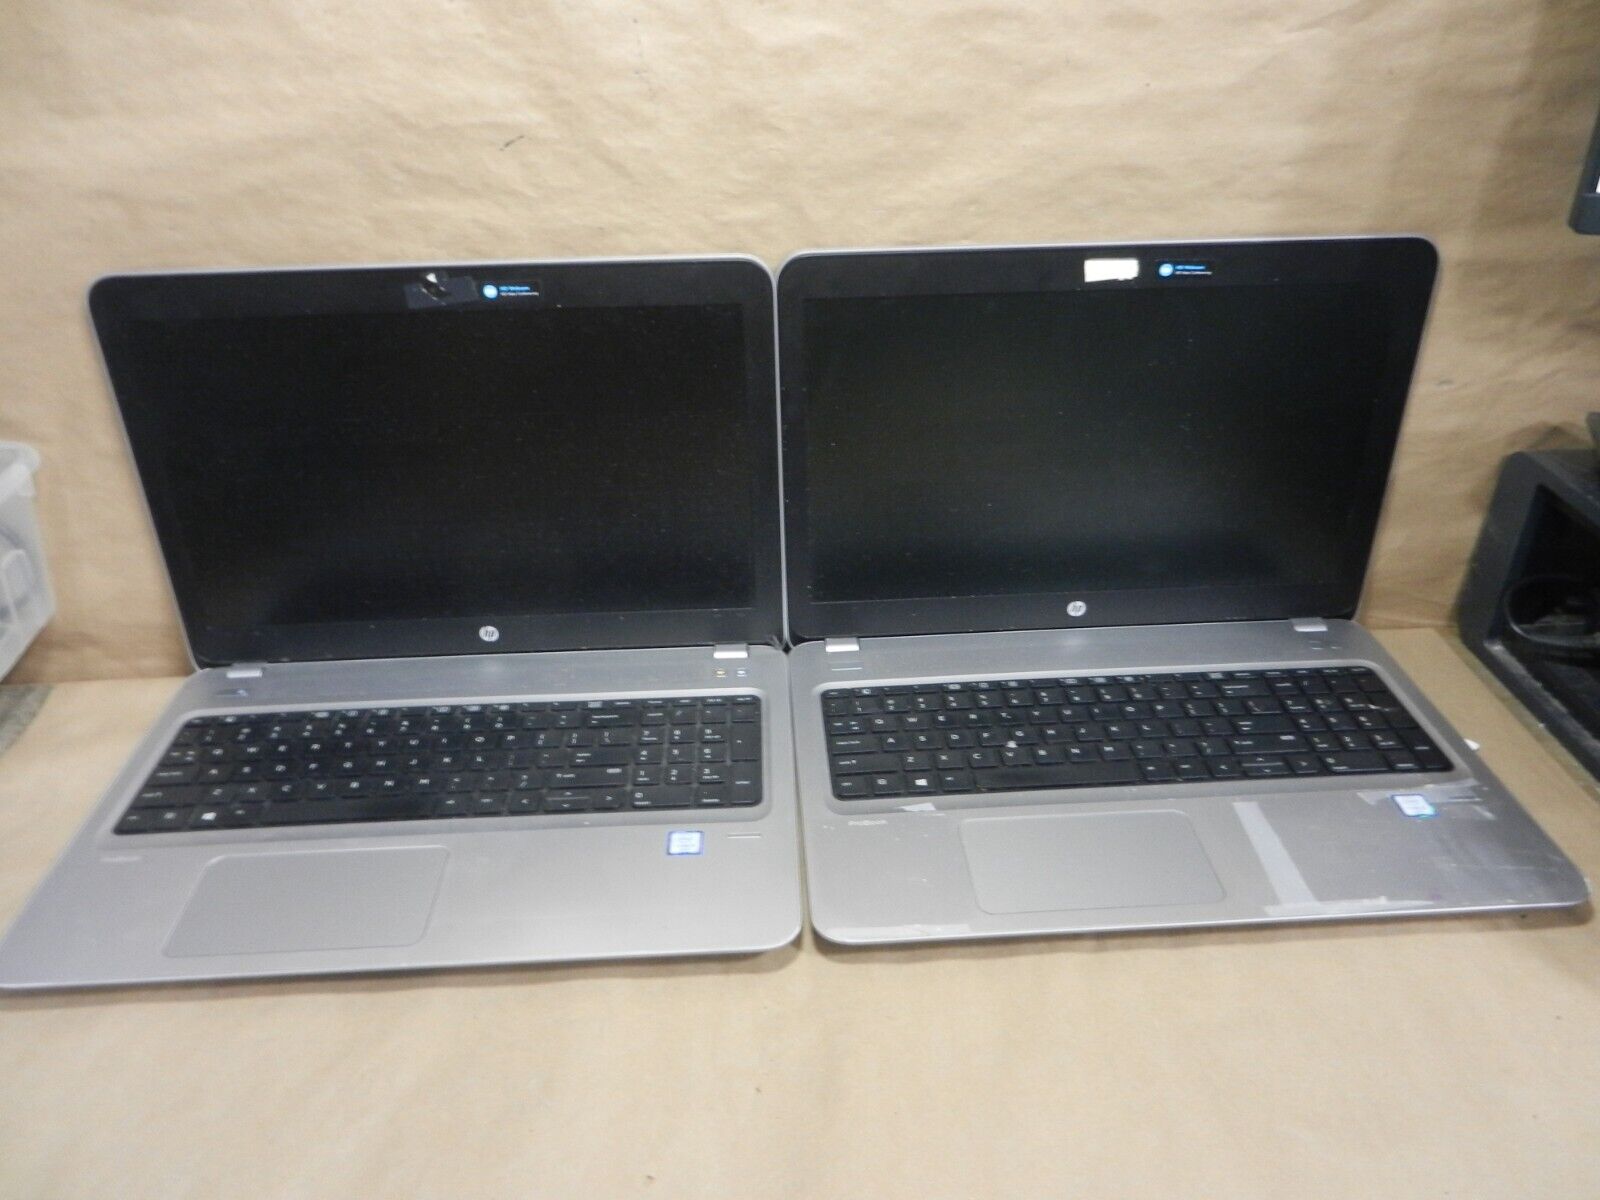 2X lot * * * * *HP ProBook 450 G4  INTEL CORE i3-6006U @2.0Ghz / no ram / NO HDD